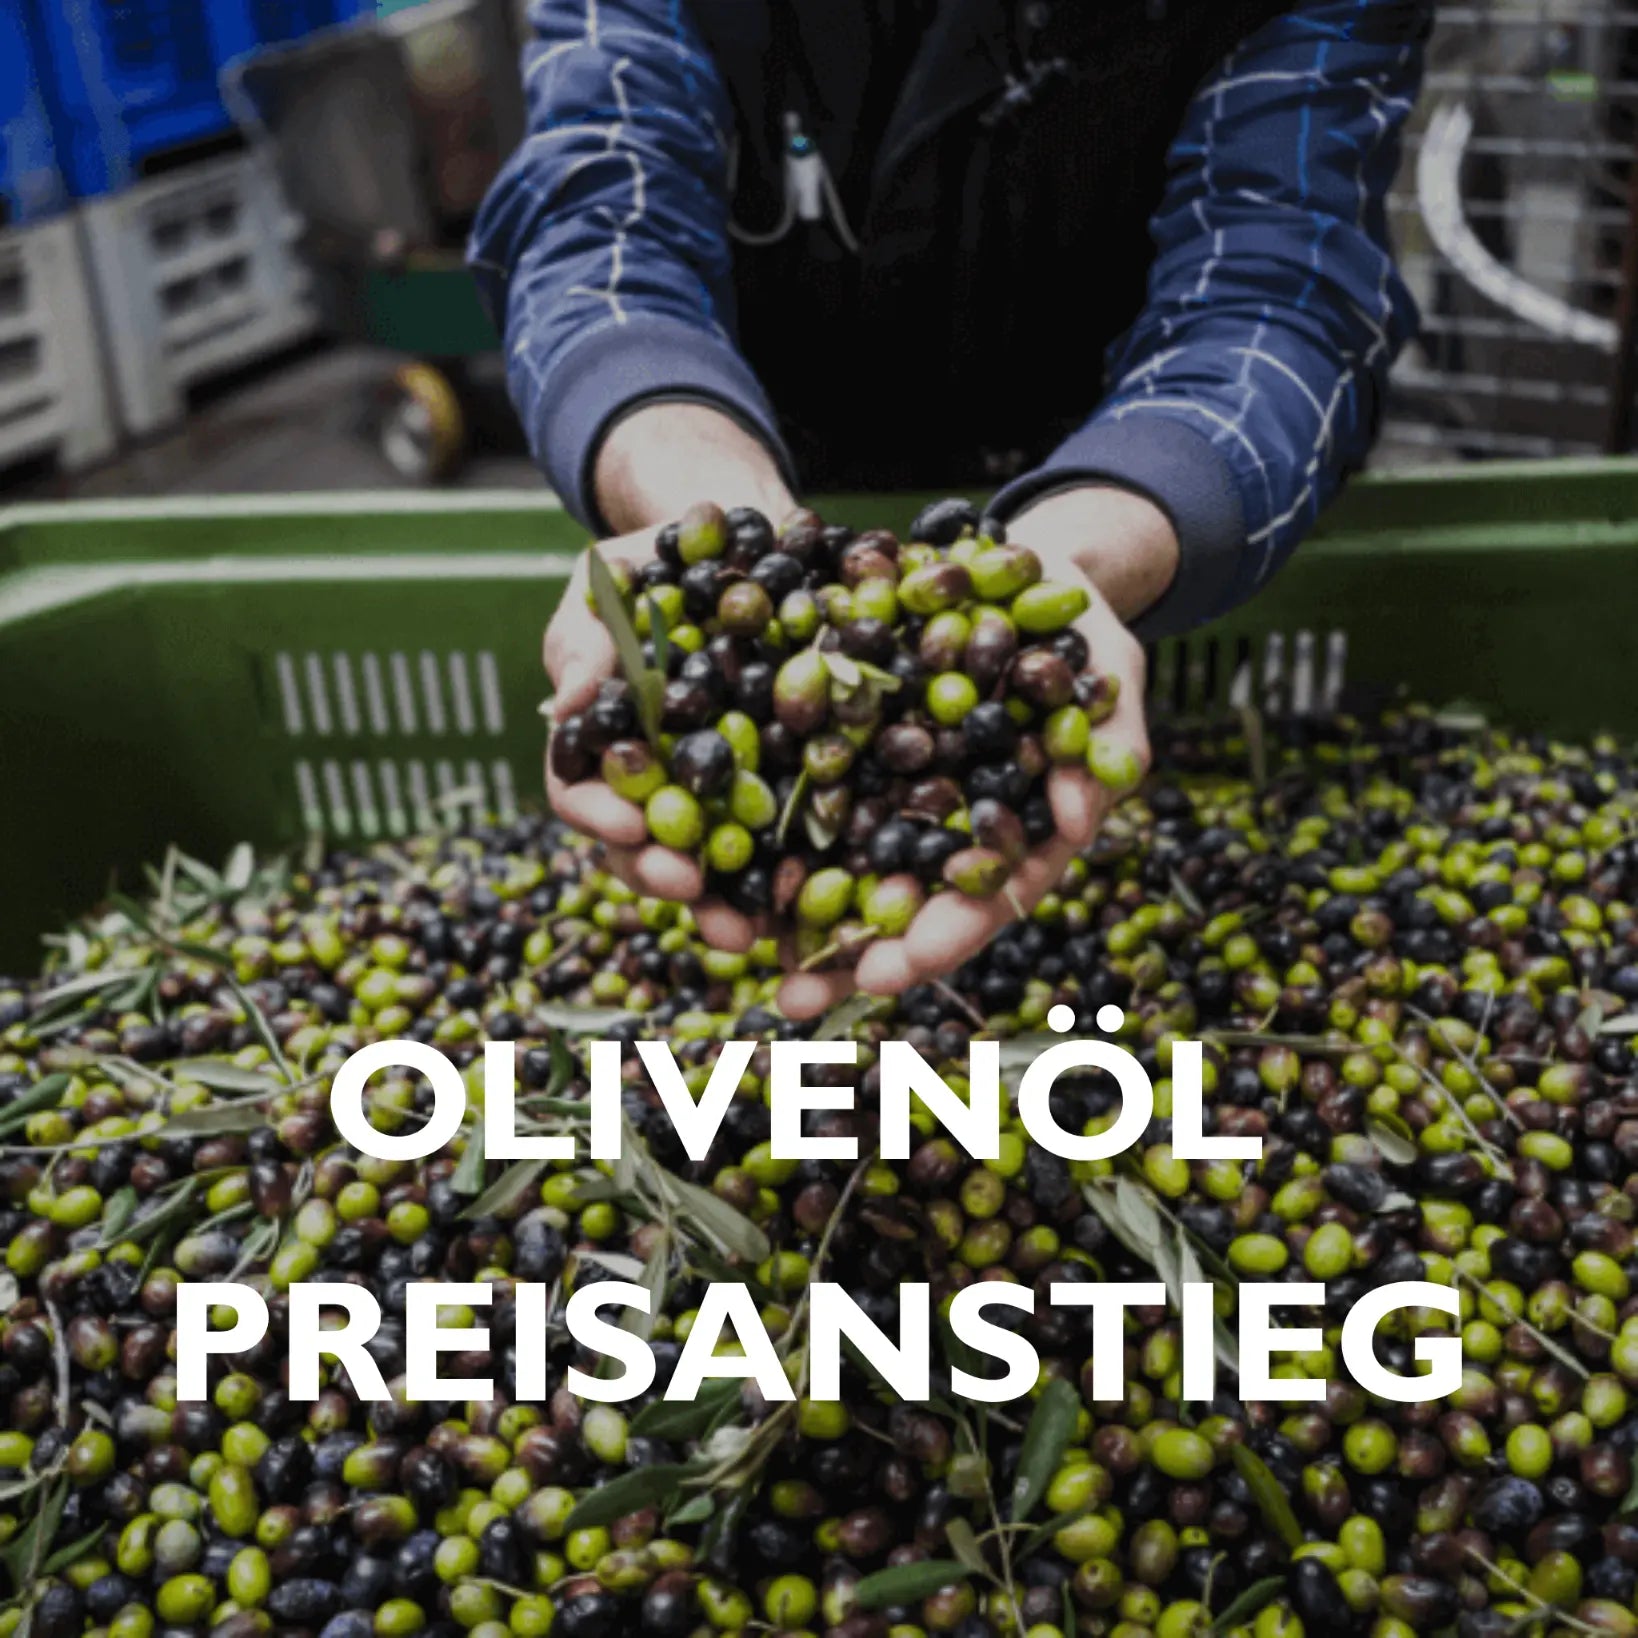 Preisanstieg Olivenöl auf Grund schlechter Olivenernte